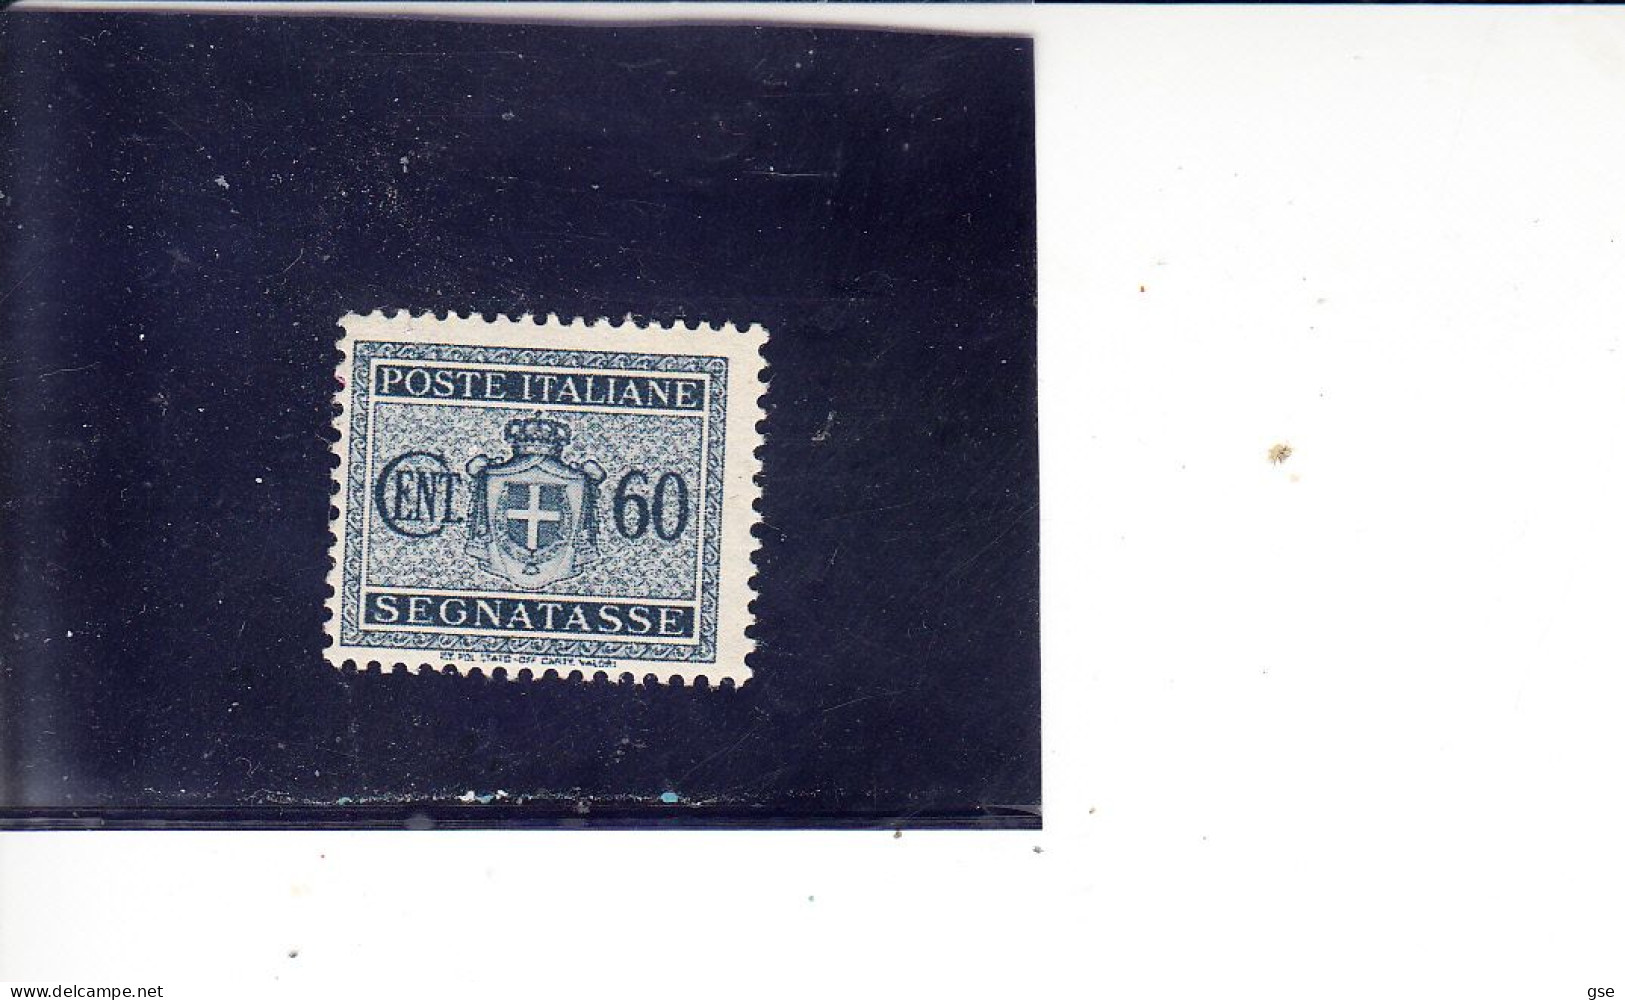 ITALIA  1934 -  Sassone  41** - Segnatasse - Postage Due